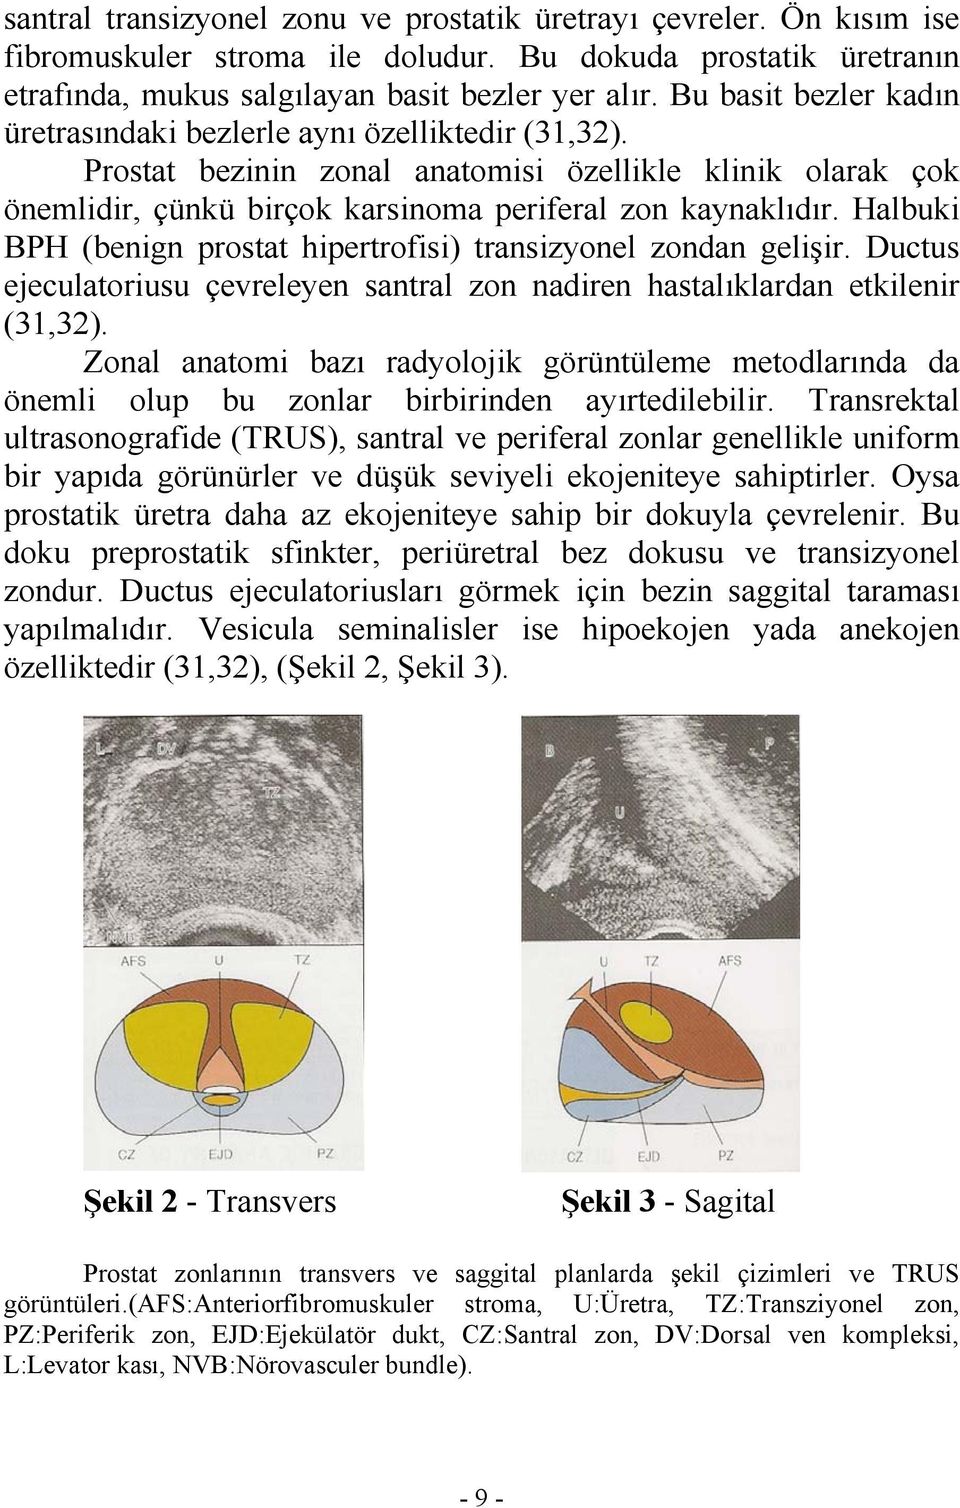 Halbuki BPH (benign prostat hipertrofisi) transizyonel zondan gelişir. Ductus ejeculatoriusu çevreleyen santral zon nadiren hastalıklardan etkilenir (31,32).